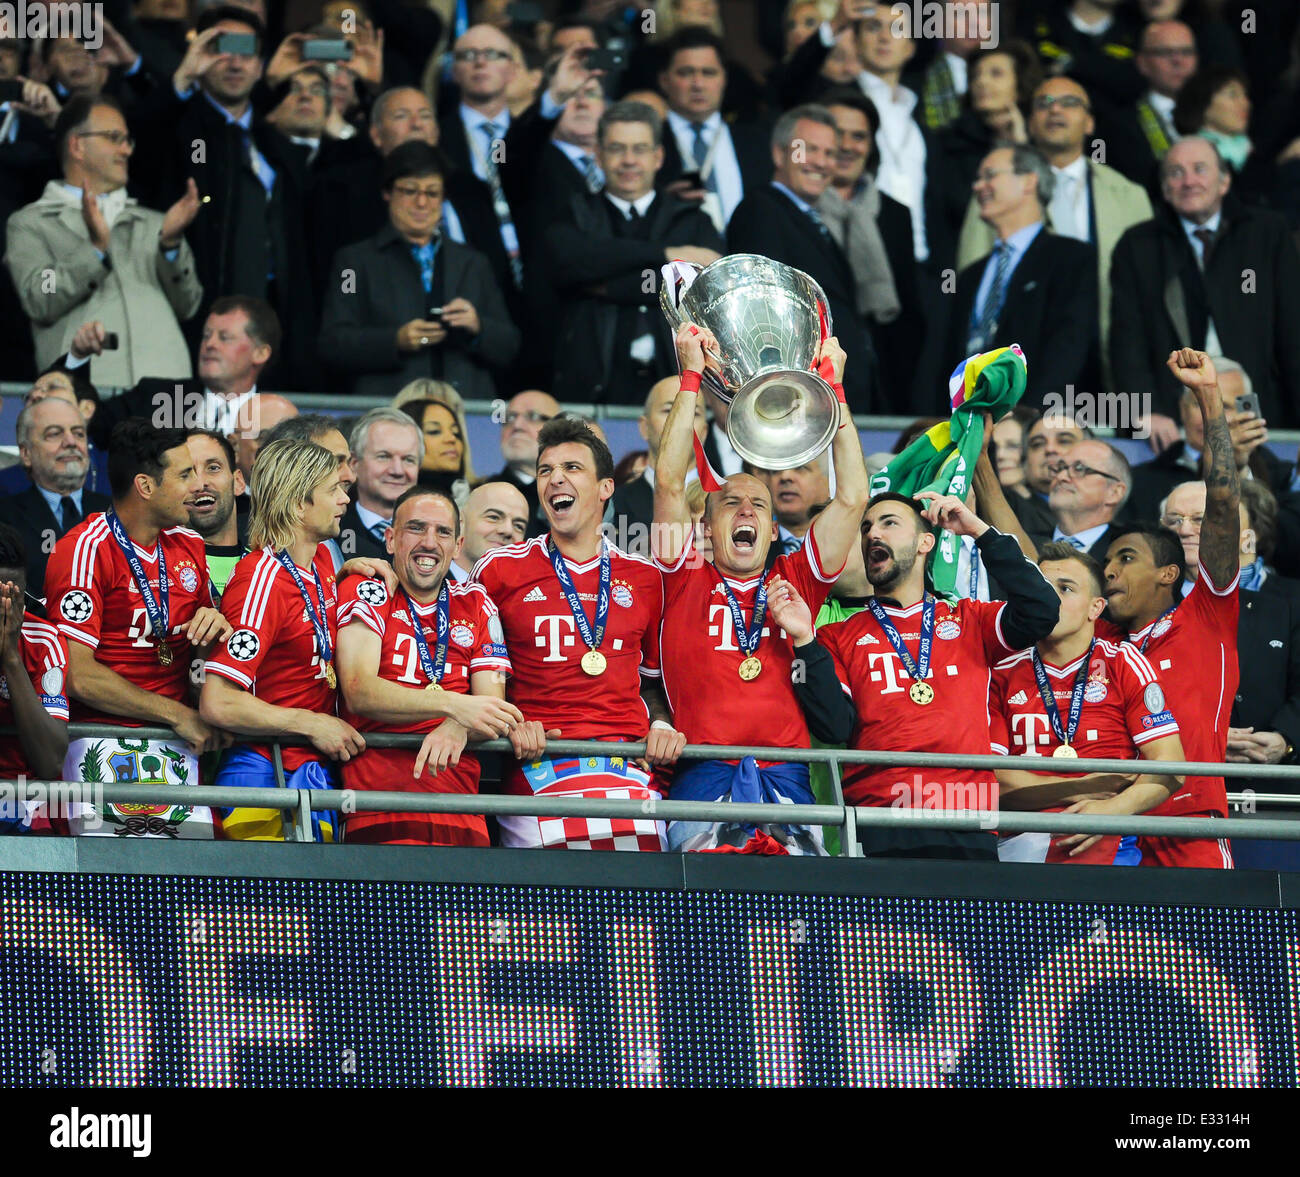 Die 2013 Uefa Champions League Finale Im Wembley Stadion Zwischen Fc Bayern Munchen Und Borussia Dortmund Mit Fc Bayern Mun Stockfotografie Alamy